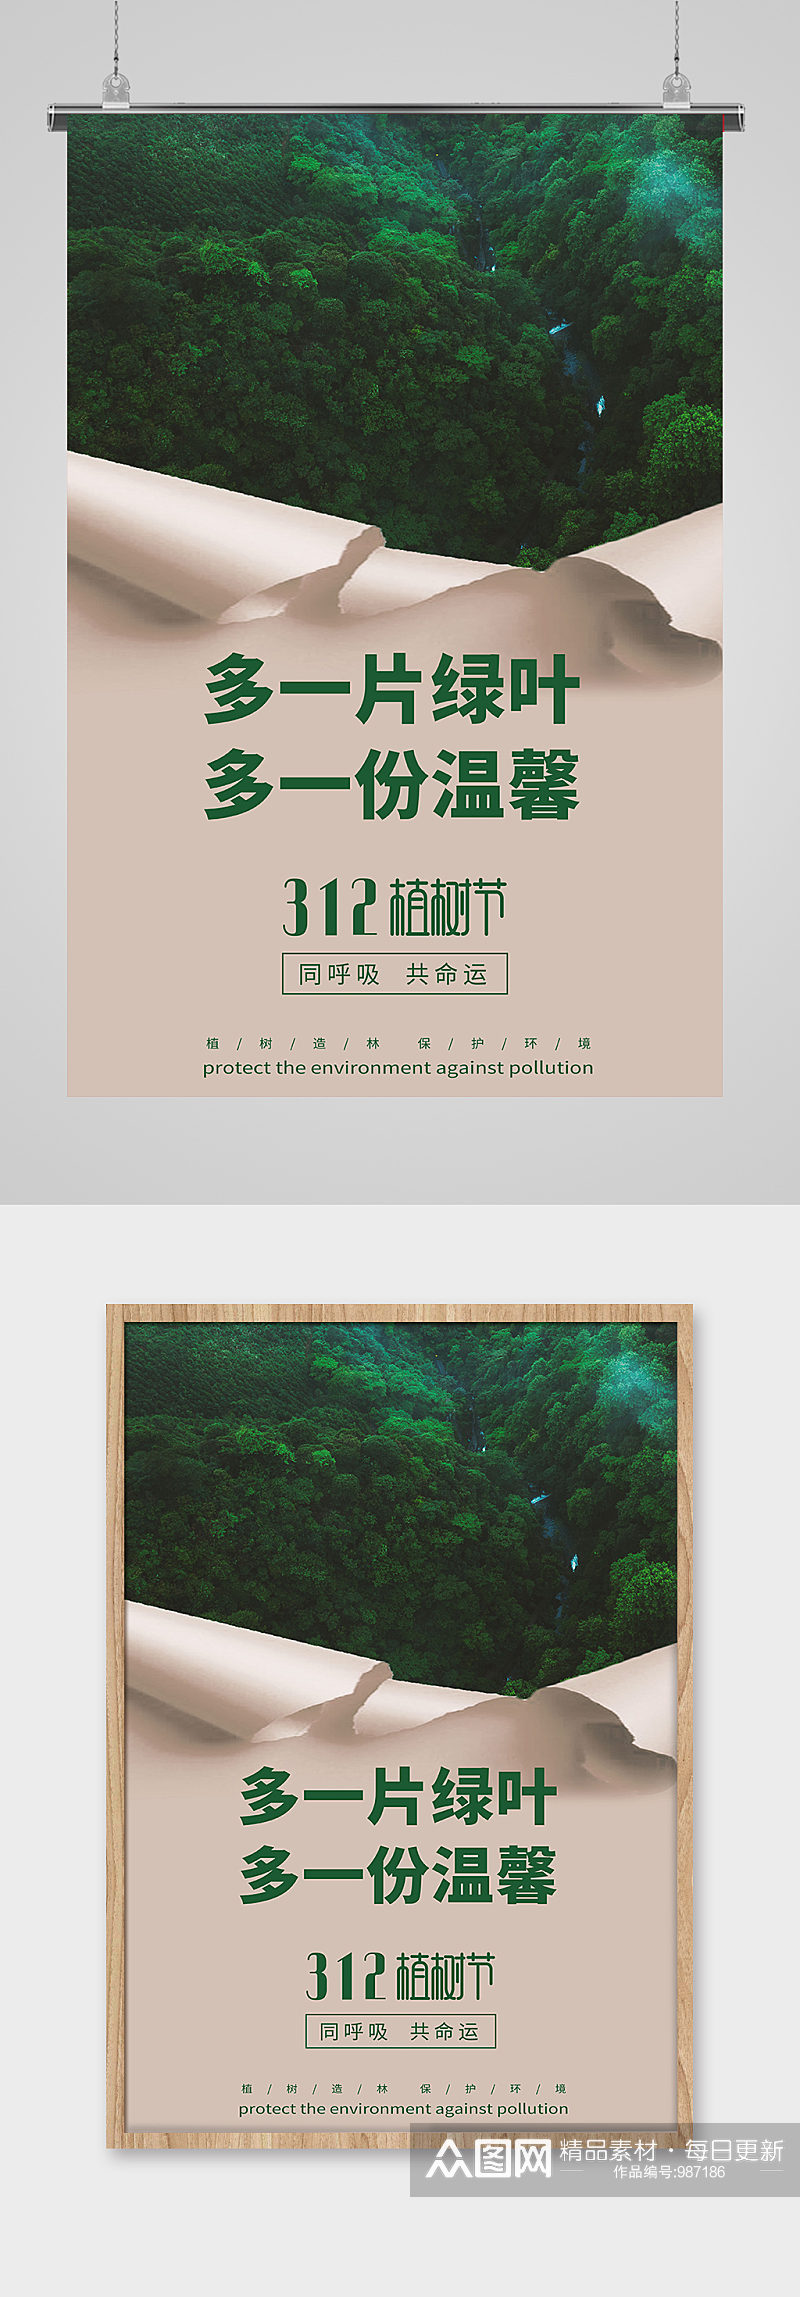 312植树节绿色宣传海报素材